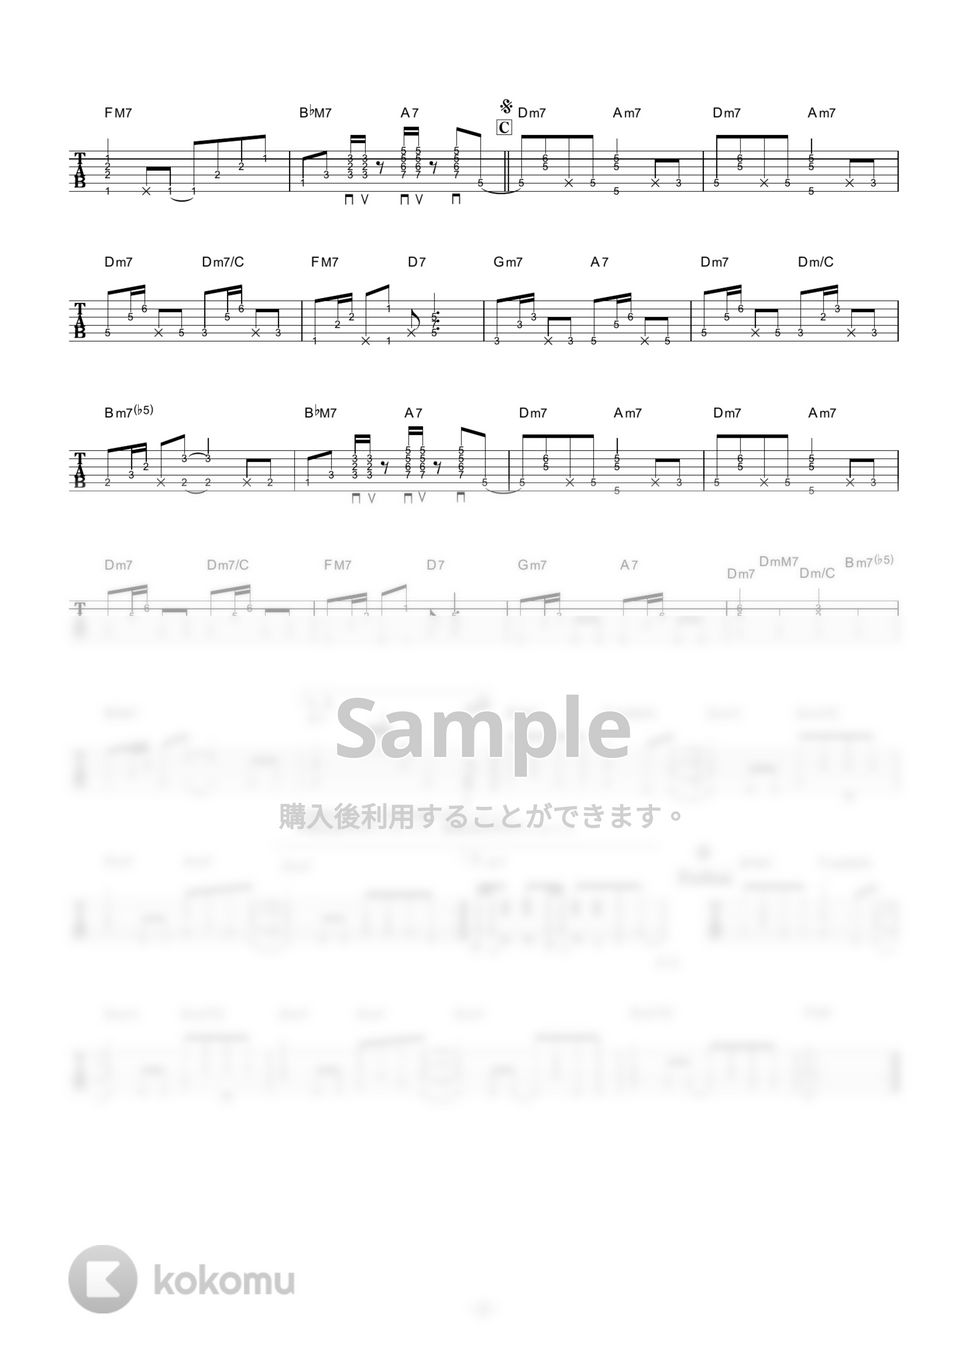 宇多田ヒカル - AUTOMATIC (ギター伴奏/イントロ・間奏ソロギター) by 伴奏屋TAB譜